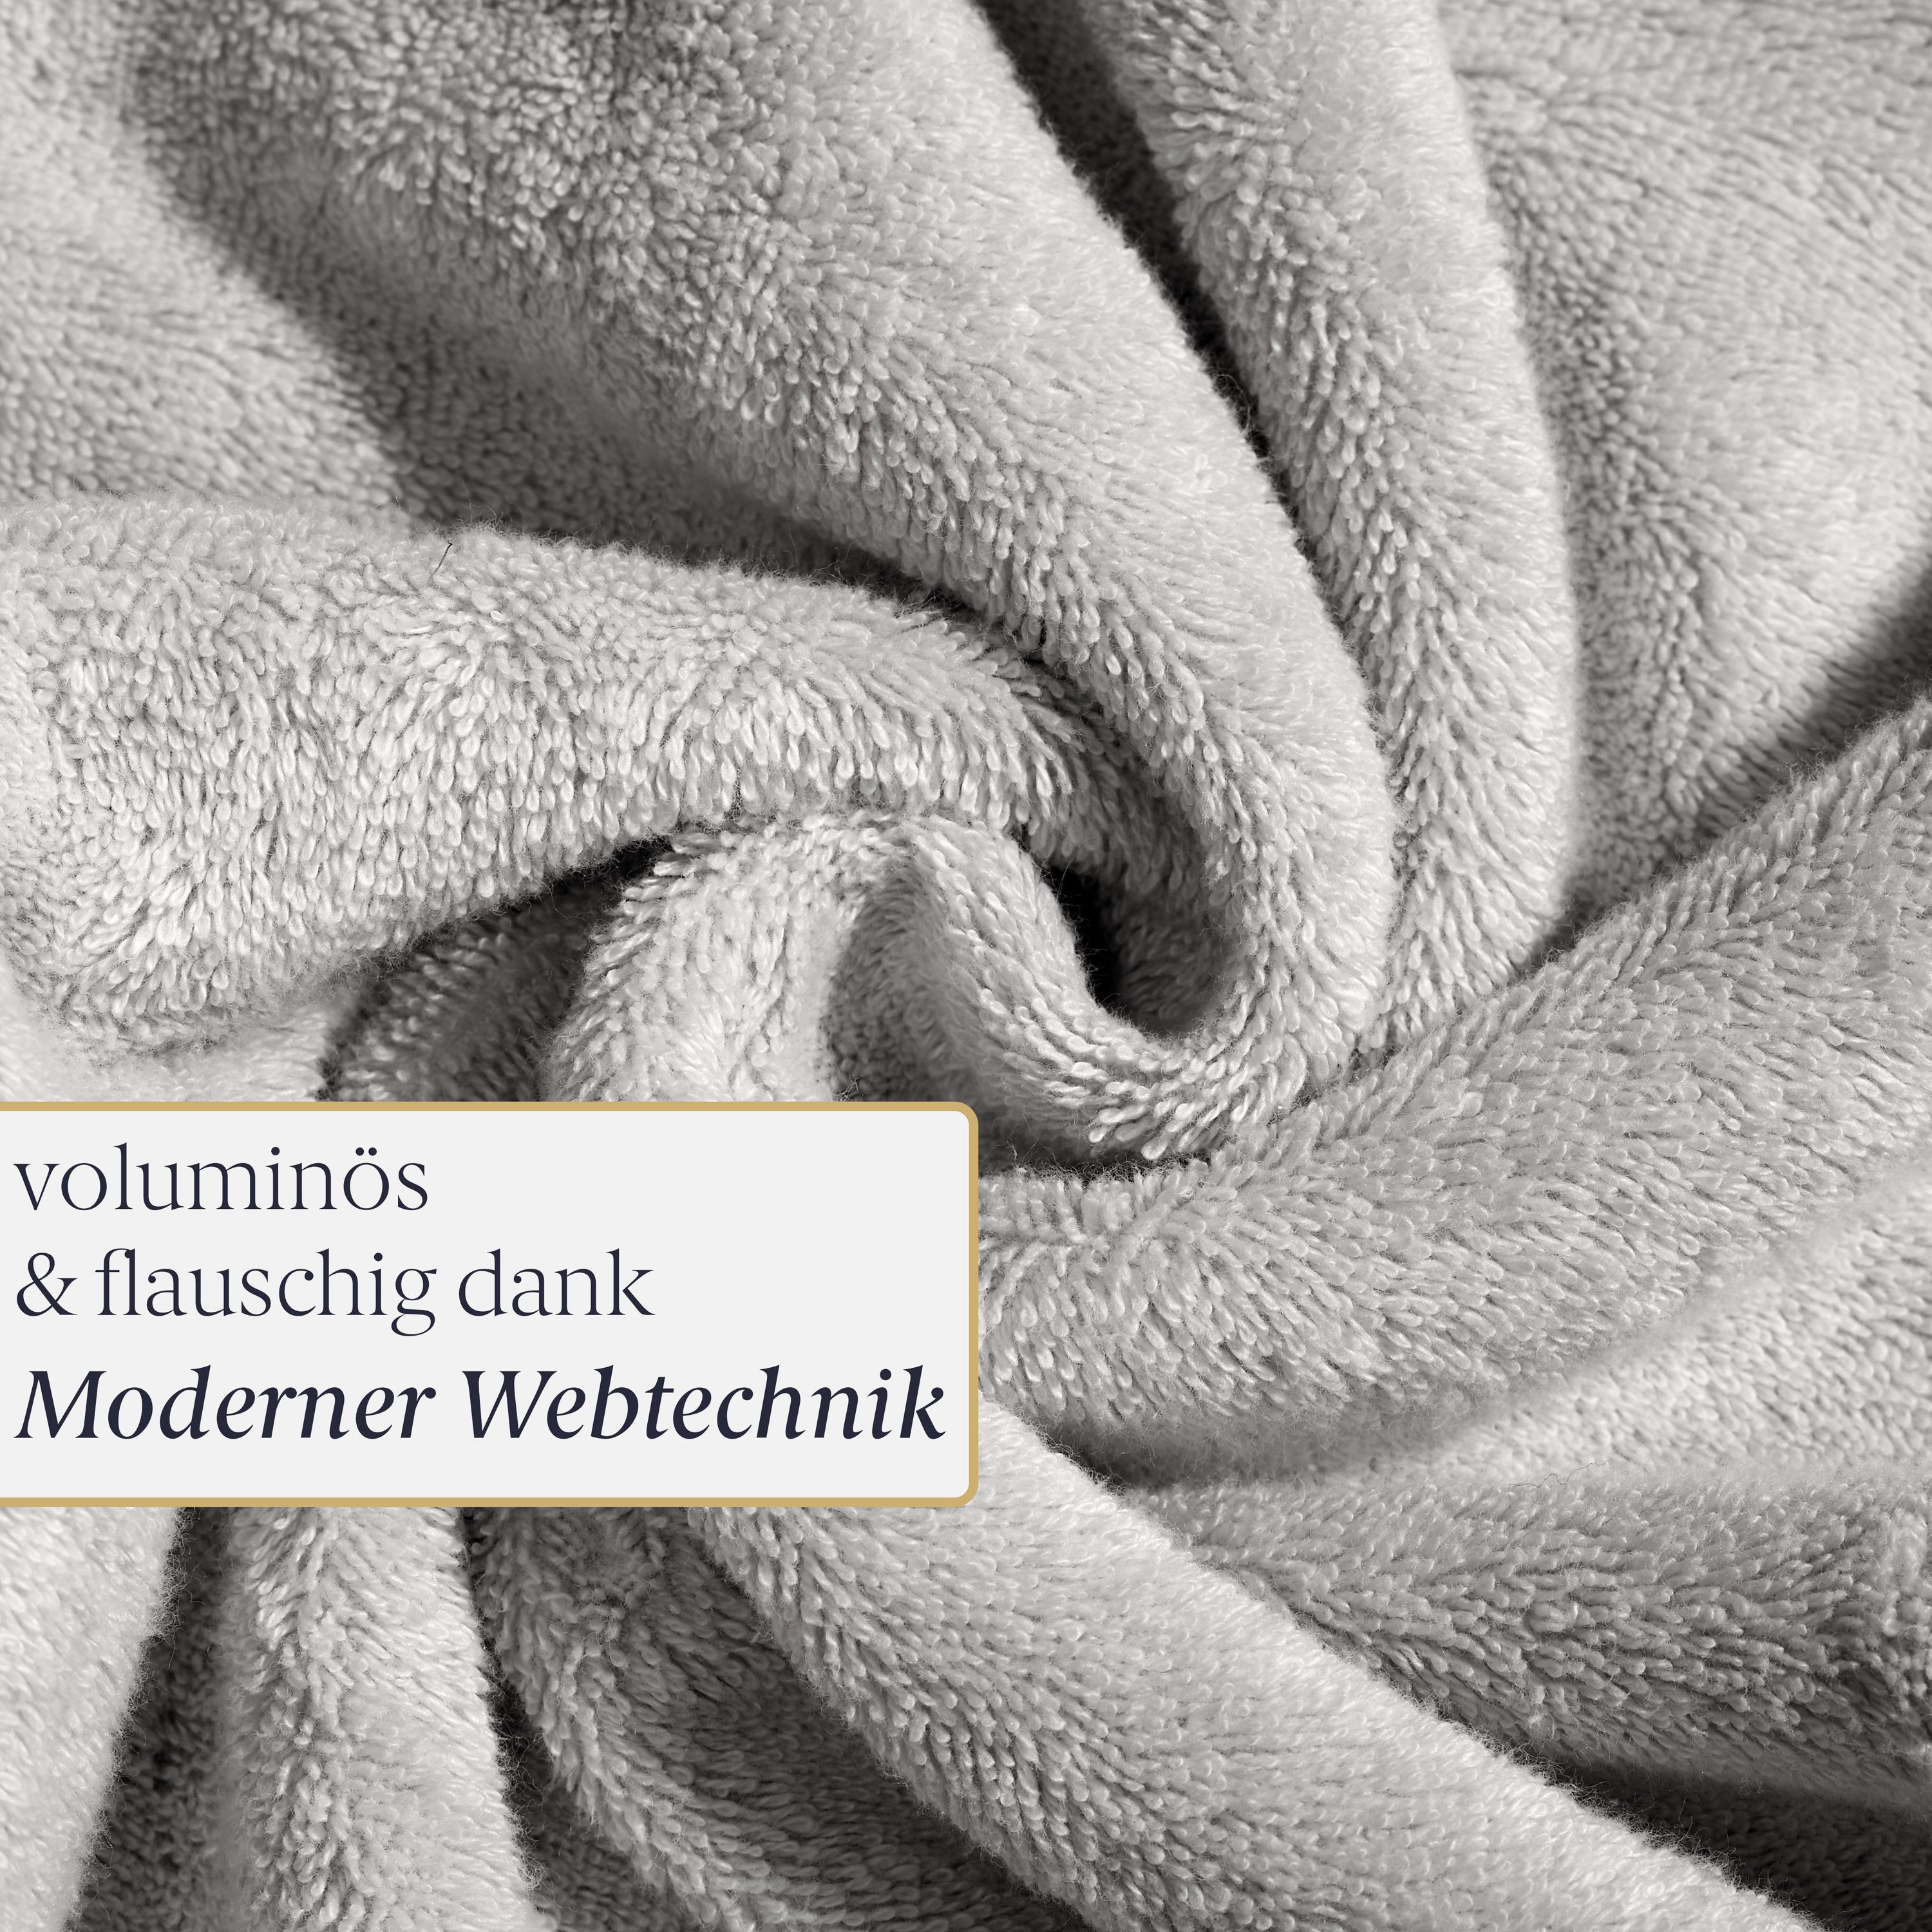 625 saugstark - Baumwolle, - g/ Premium Saunahandtuch außergewöhnlich Liebenstein aus Saunatuch mit m² feinster 70x200 und weich hellgrau cm